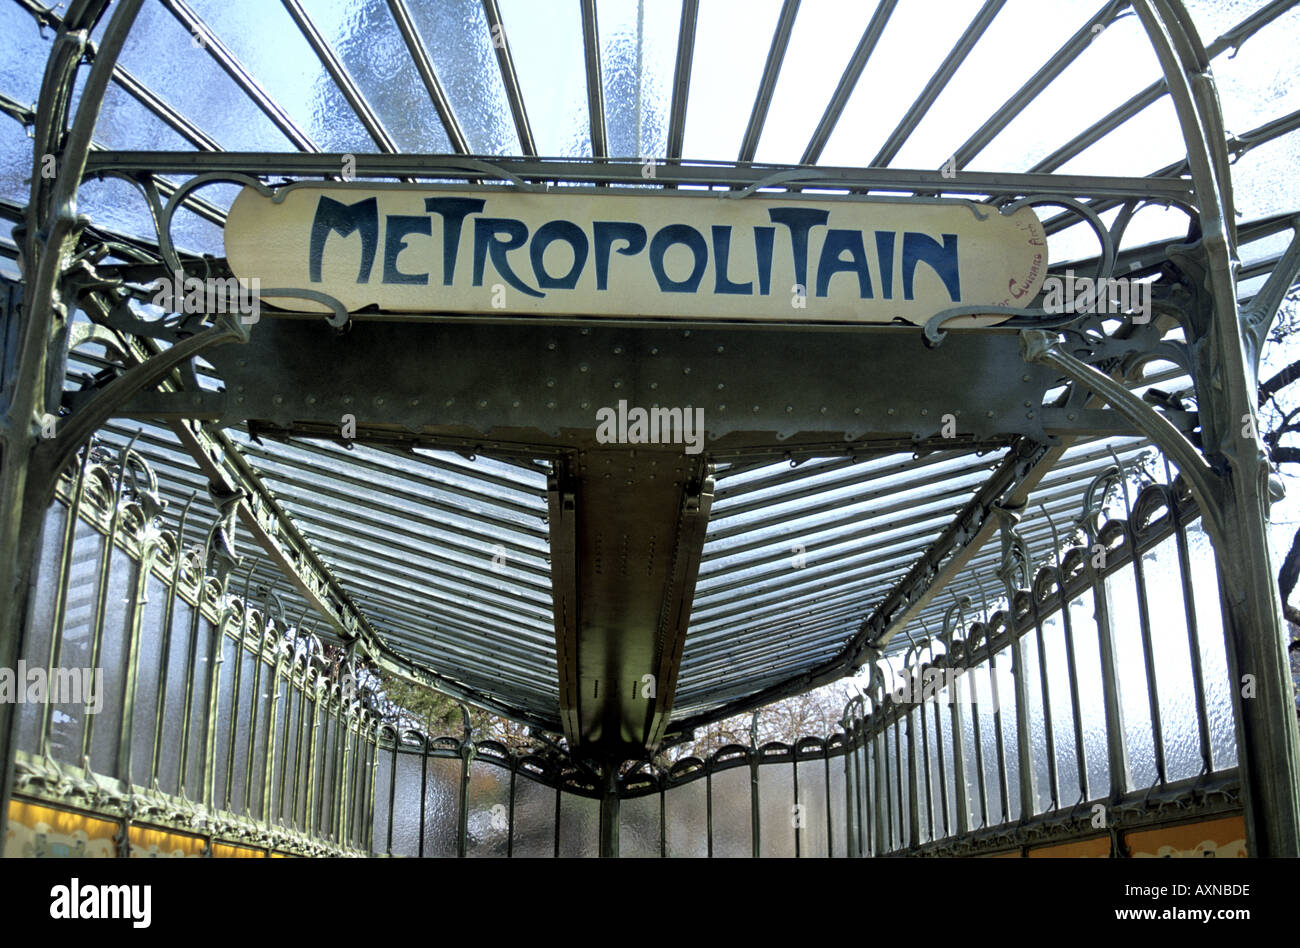 La station de métro Metropolitan sign Banque D'Images